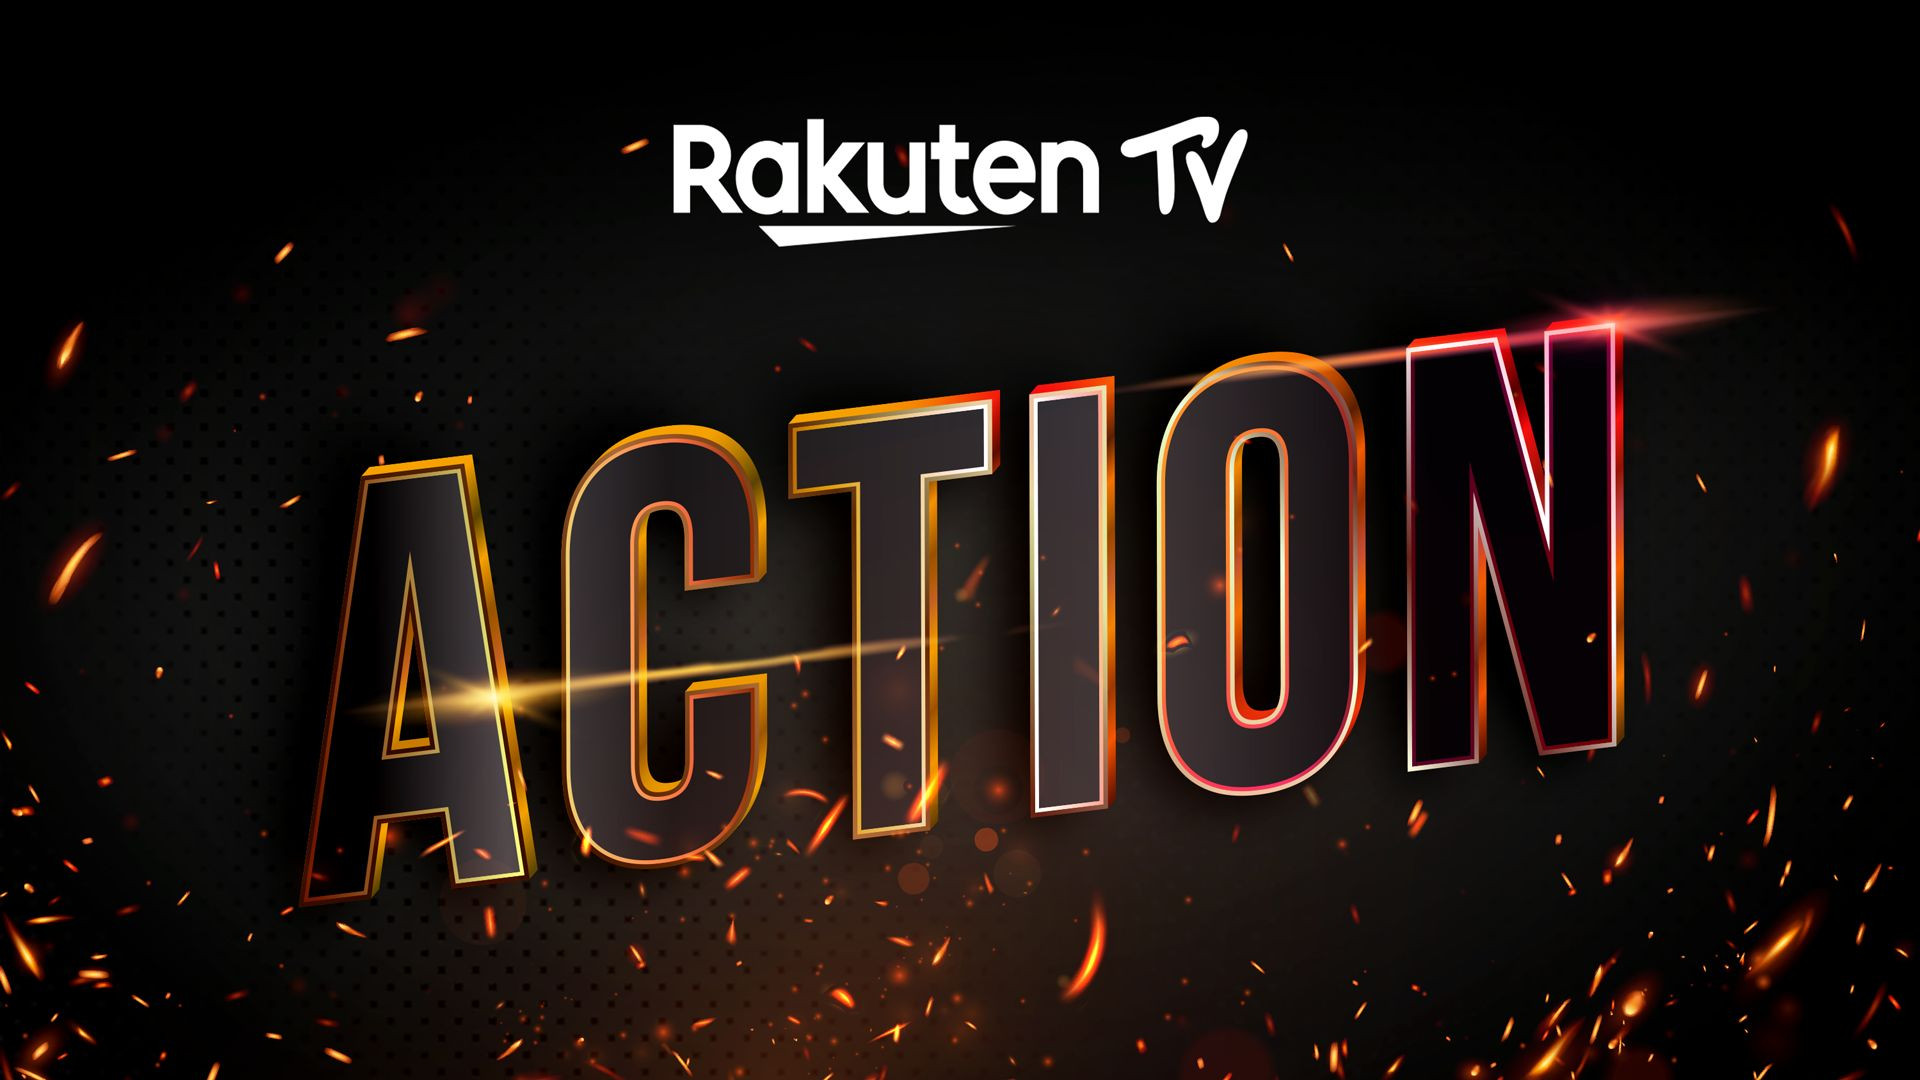 Rakuten Action TV 24/7